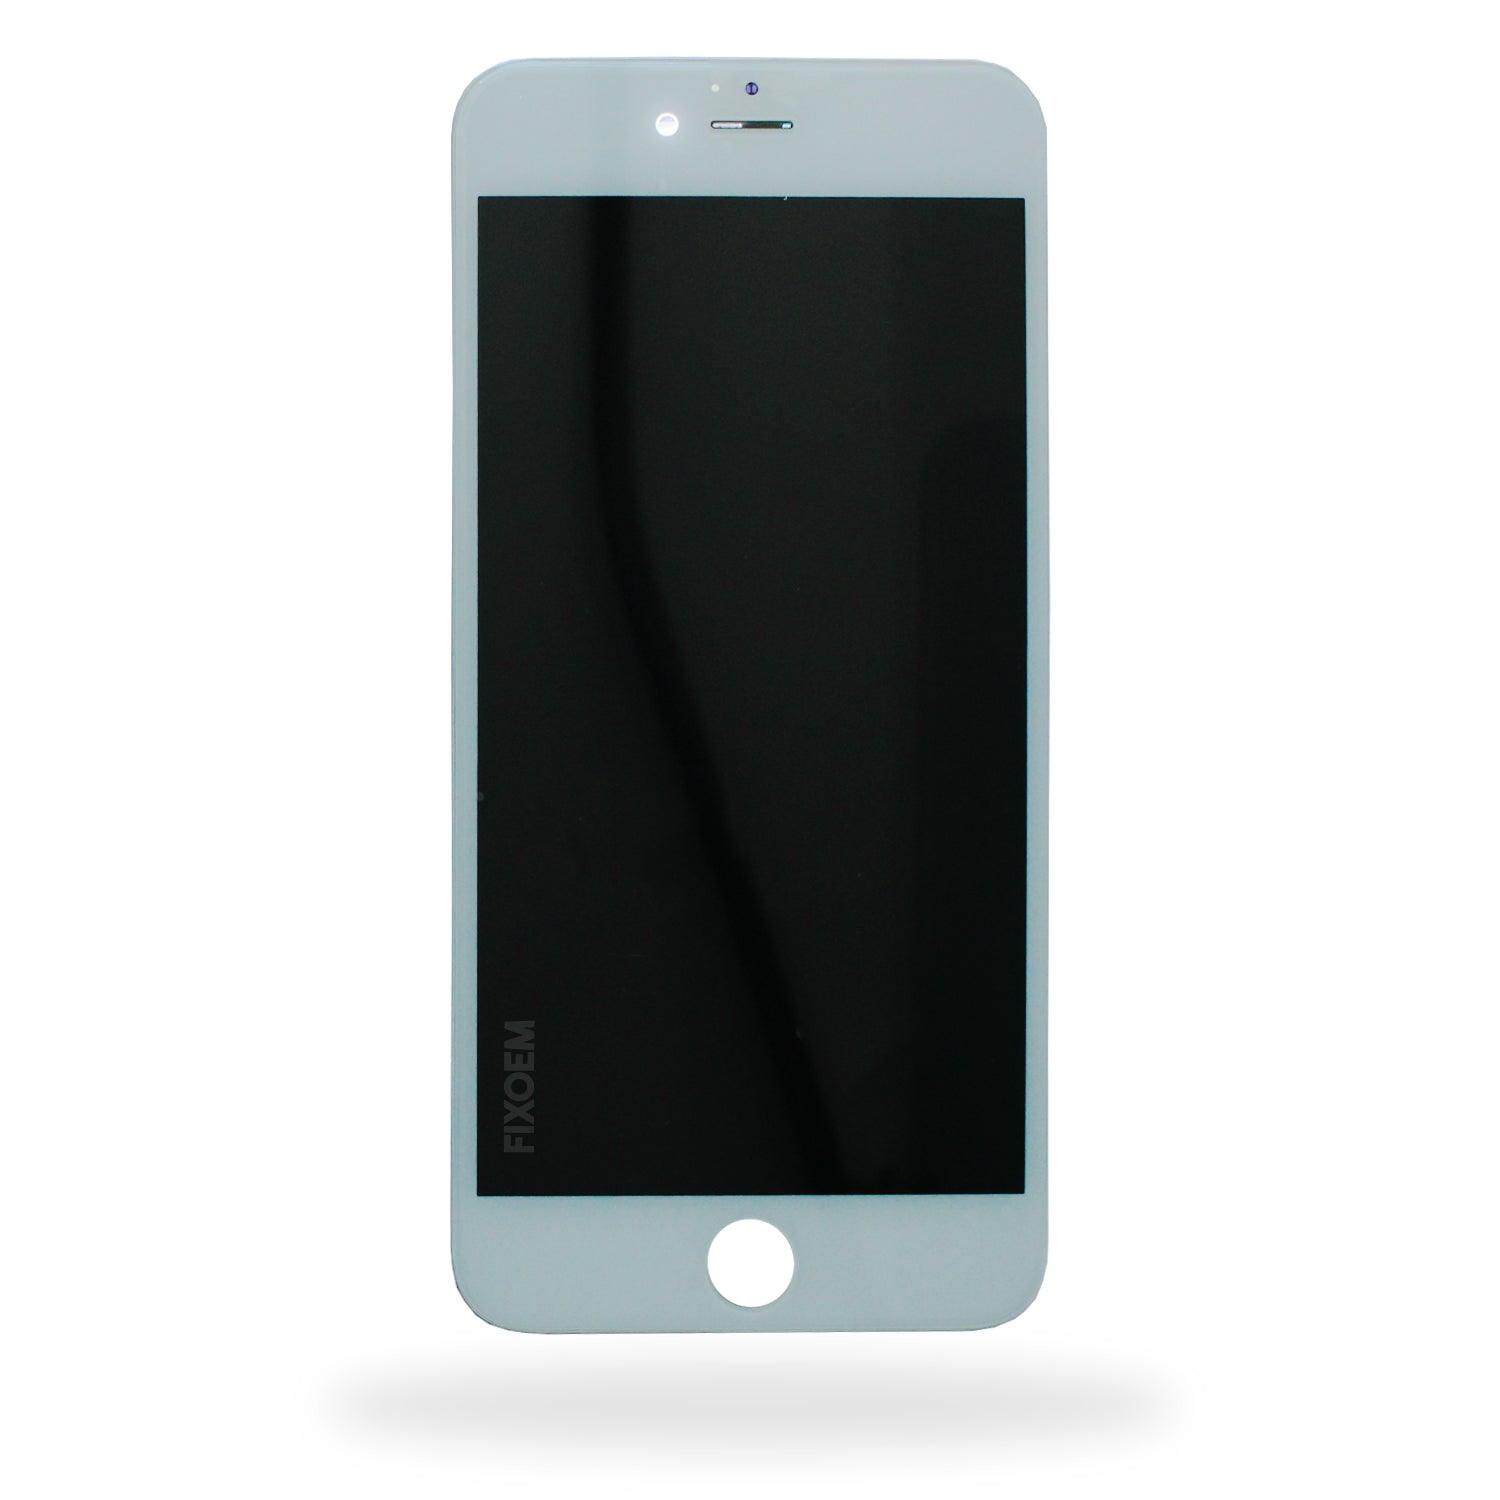 Display Iphone 6 Plus A1522 A1524. a solo $ 210.00 Refaccion y puestos celulares, refurbish y microelectronica.- FixOEM